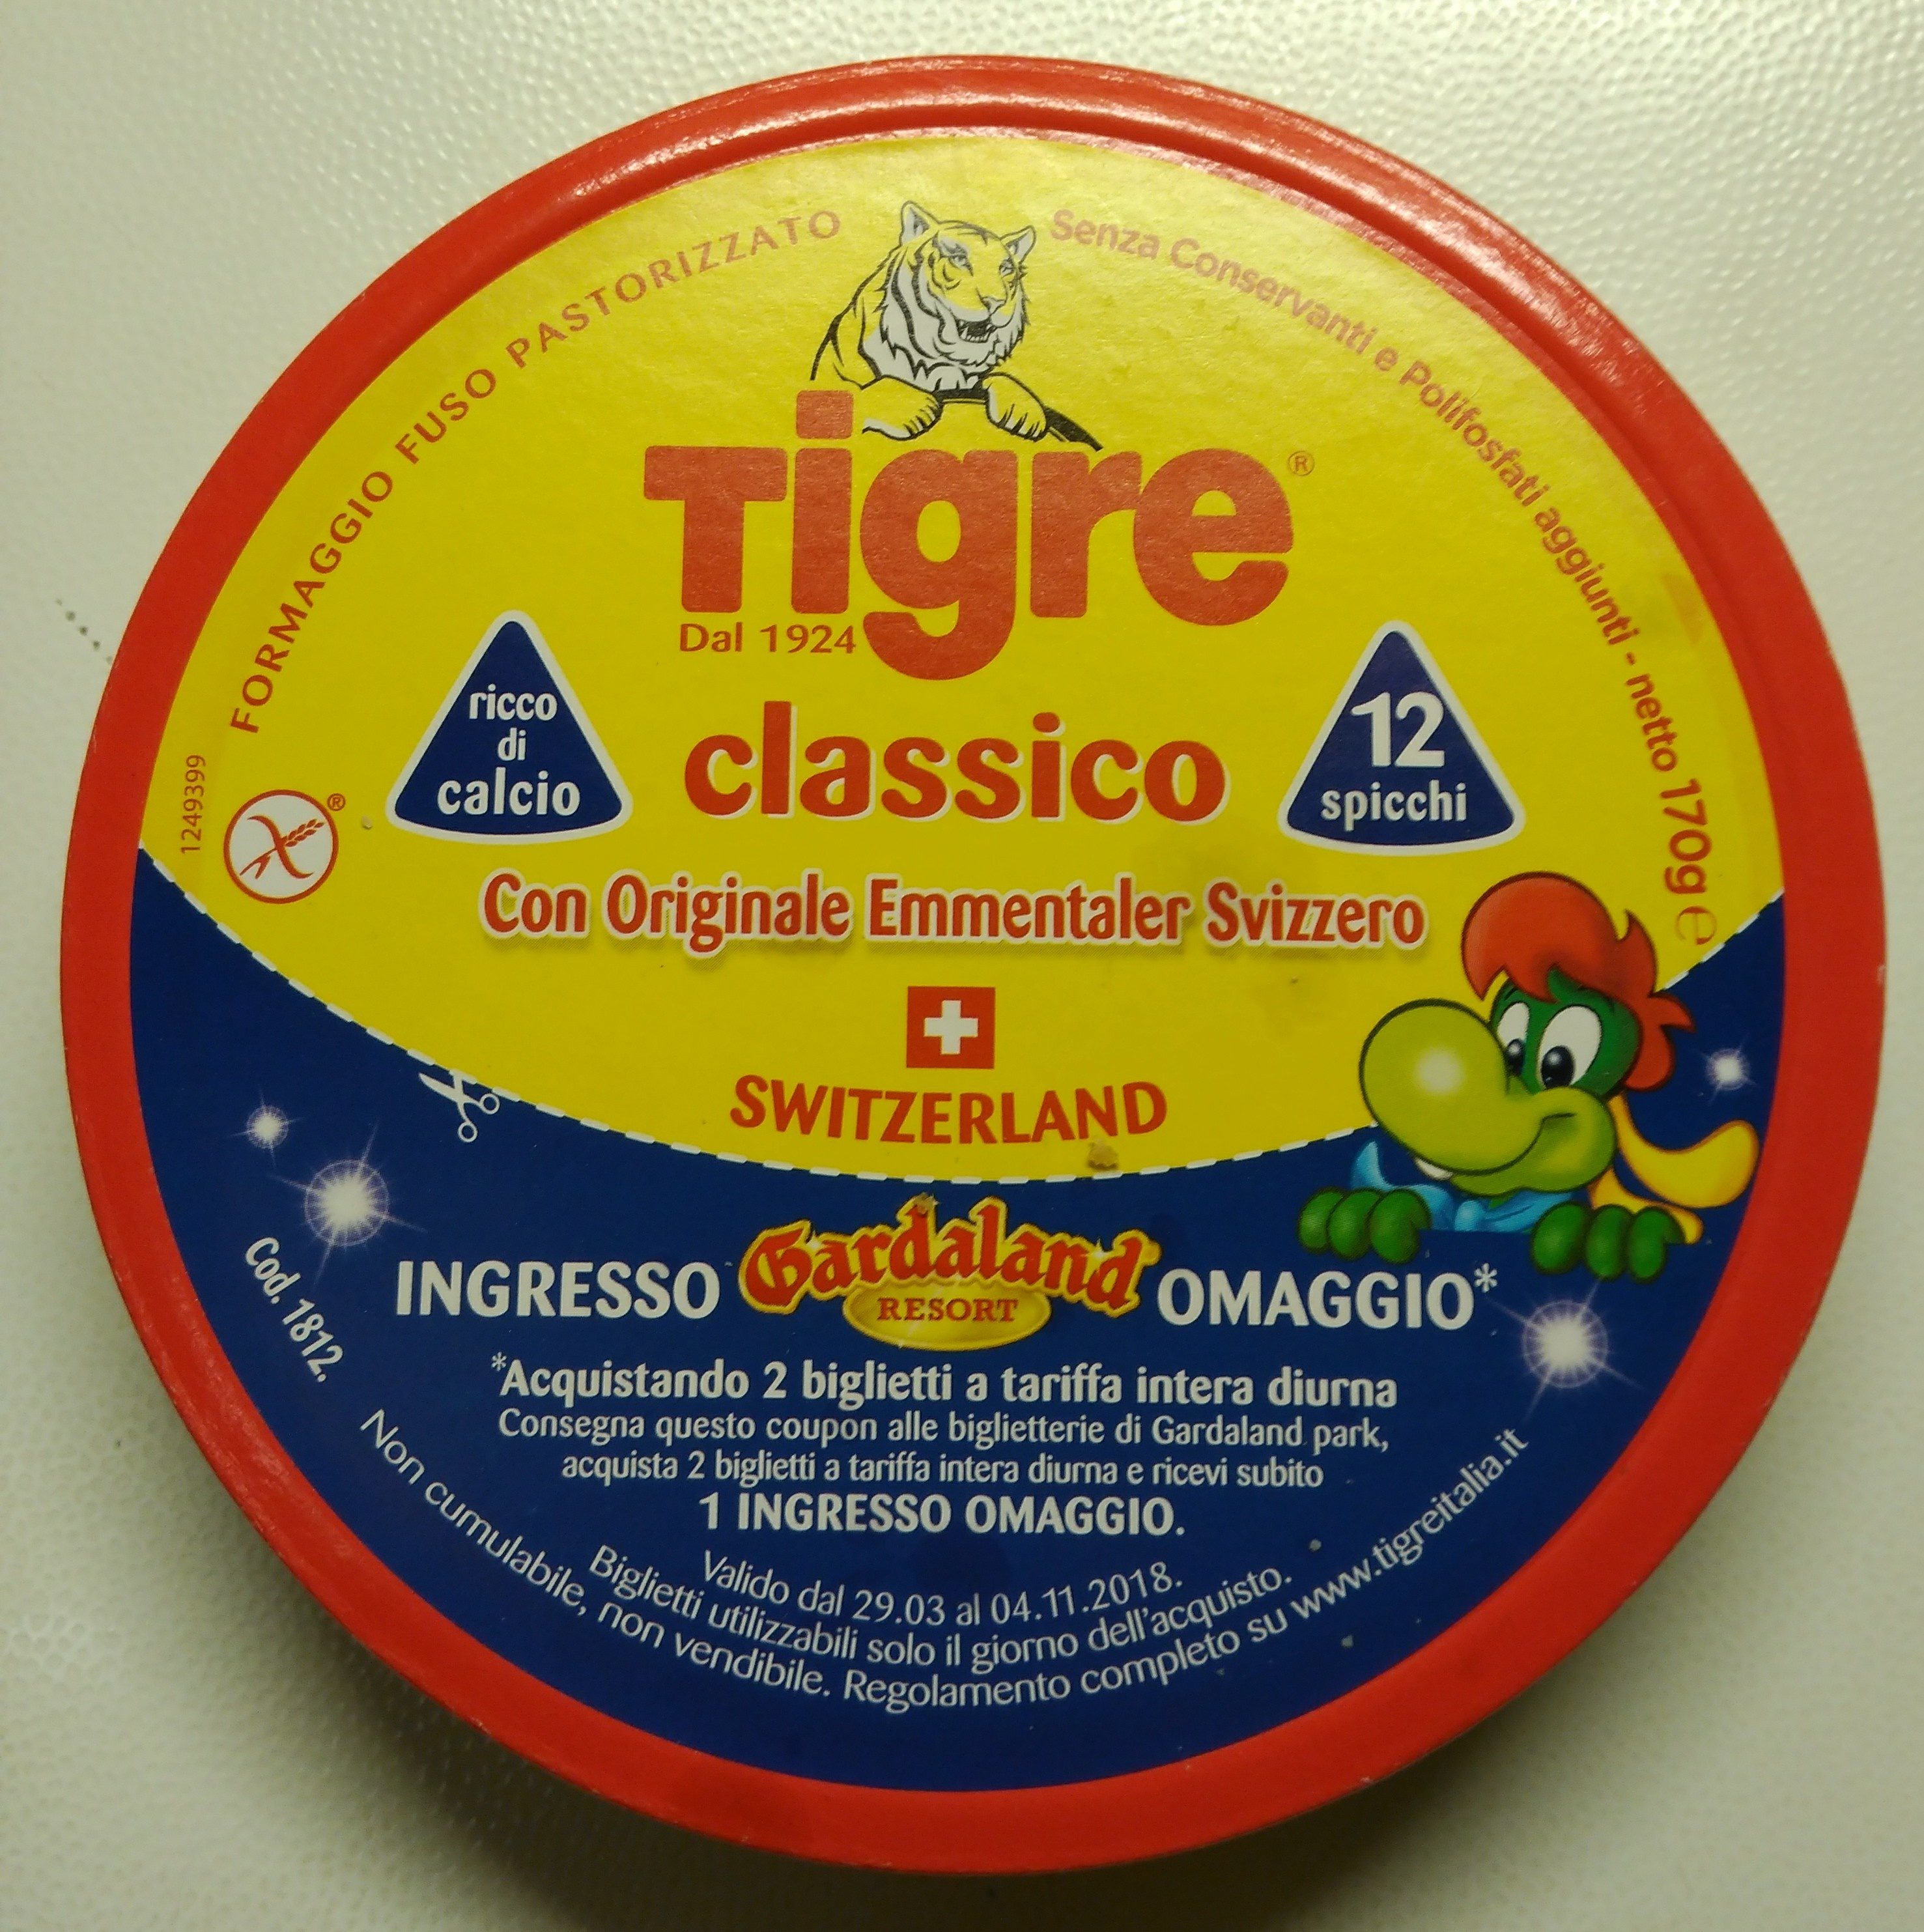 Tigre Classico 12 spicchi - Product - it